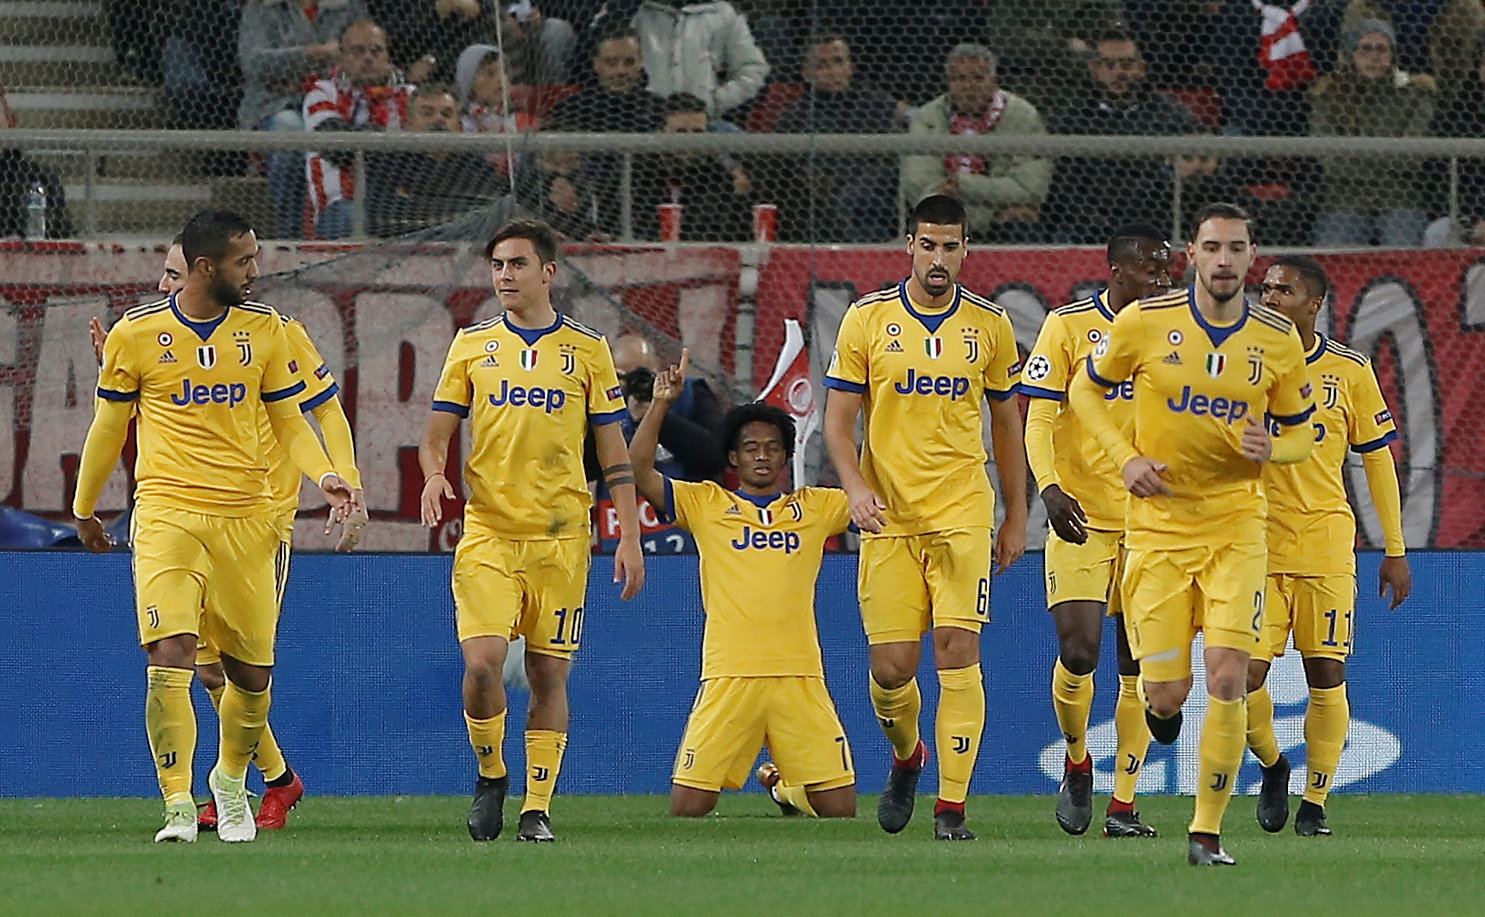 Niềm vui của các cầu thủ Juventus sau khi Cuadrado (giữa) mở tỉ số. Ảnh: REUTERS